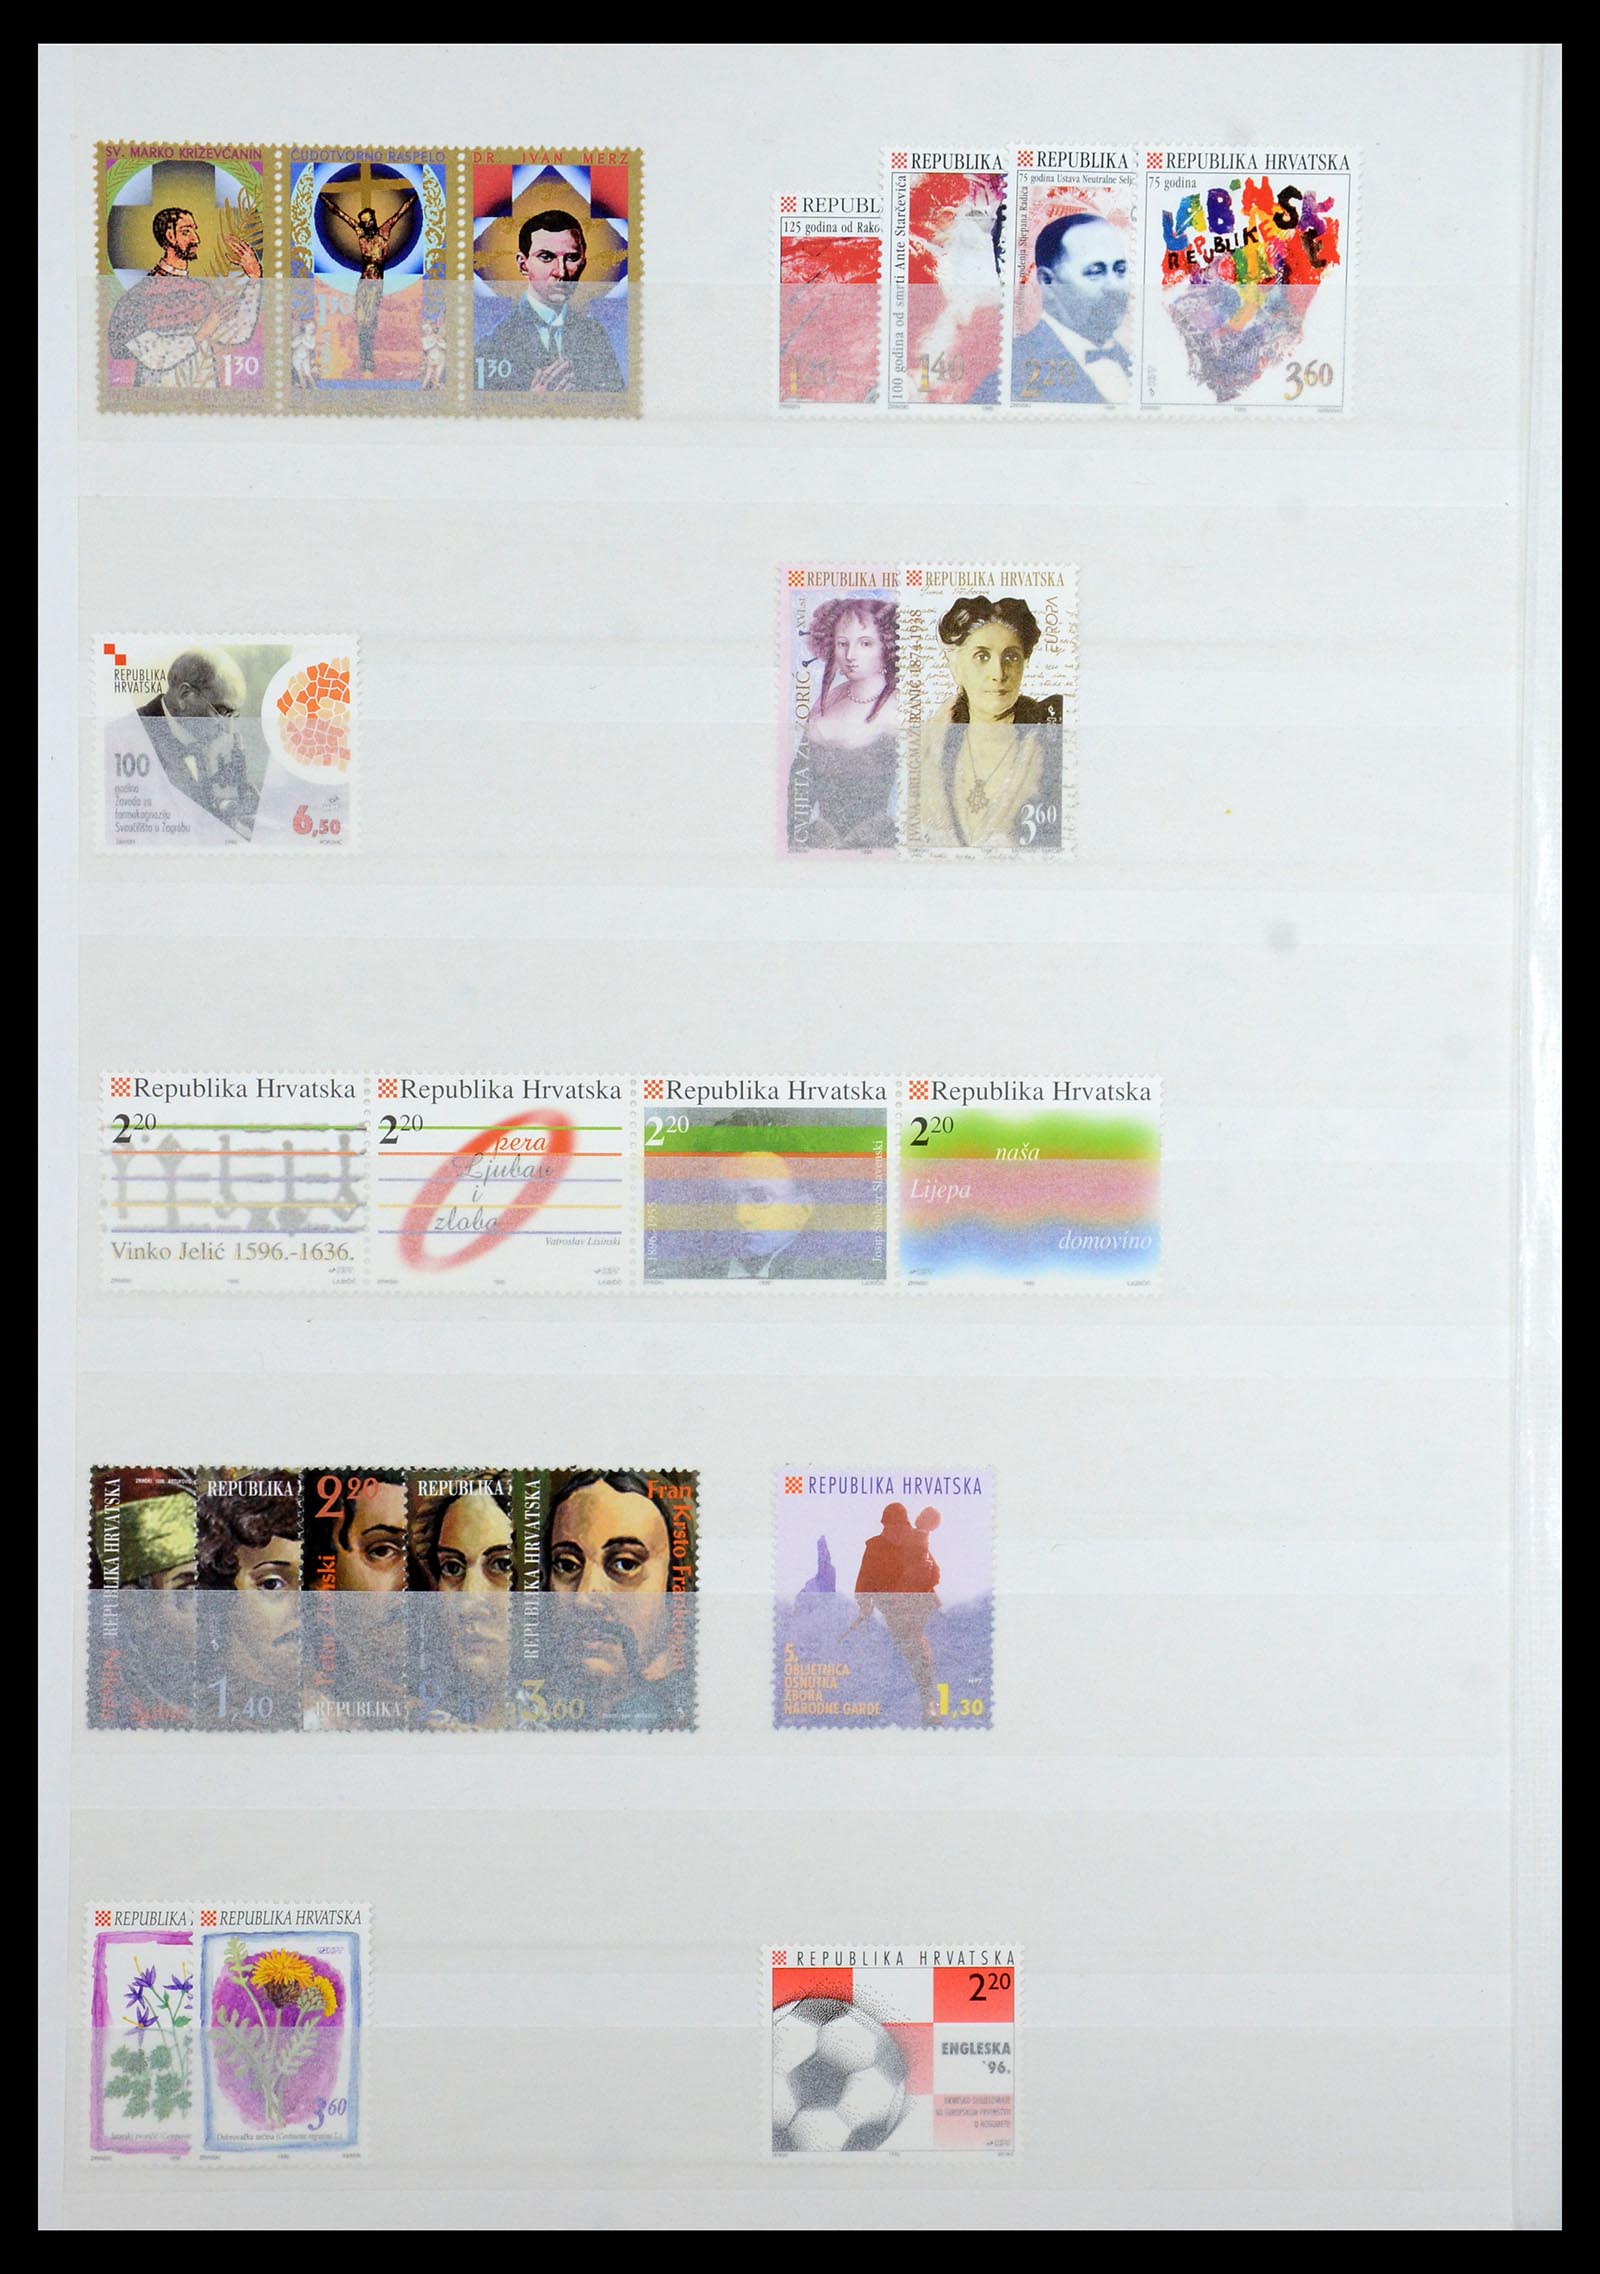 36461 044 - Stamp collection 36461 Slovenia, Croatia and Bosnia-Herzegovina MNH 1991